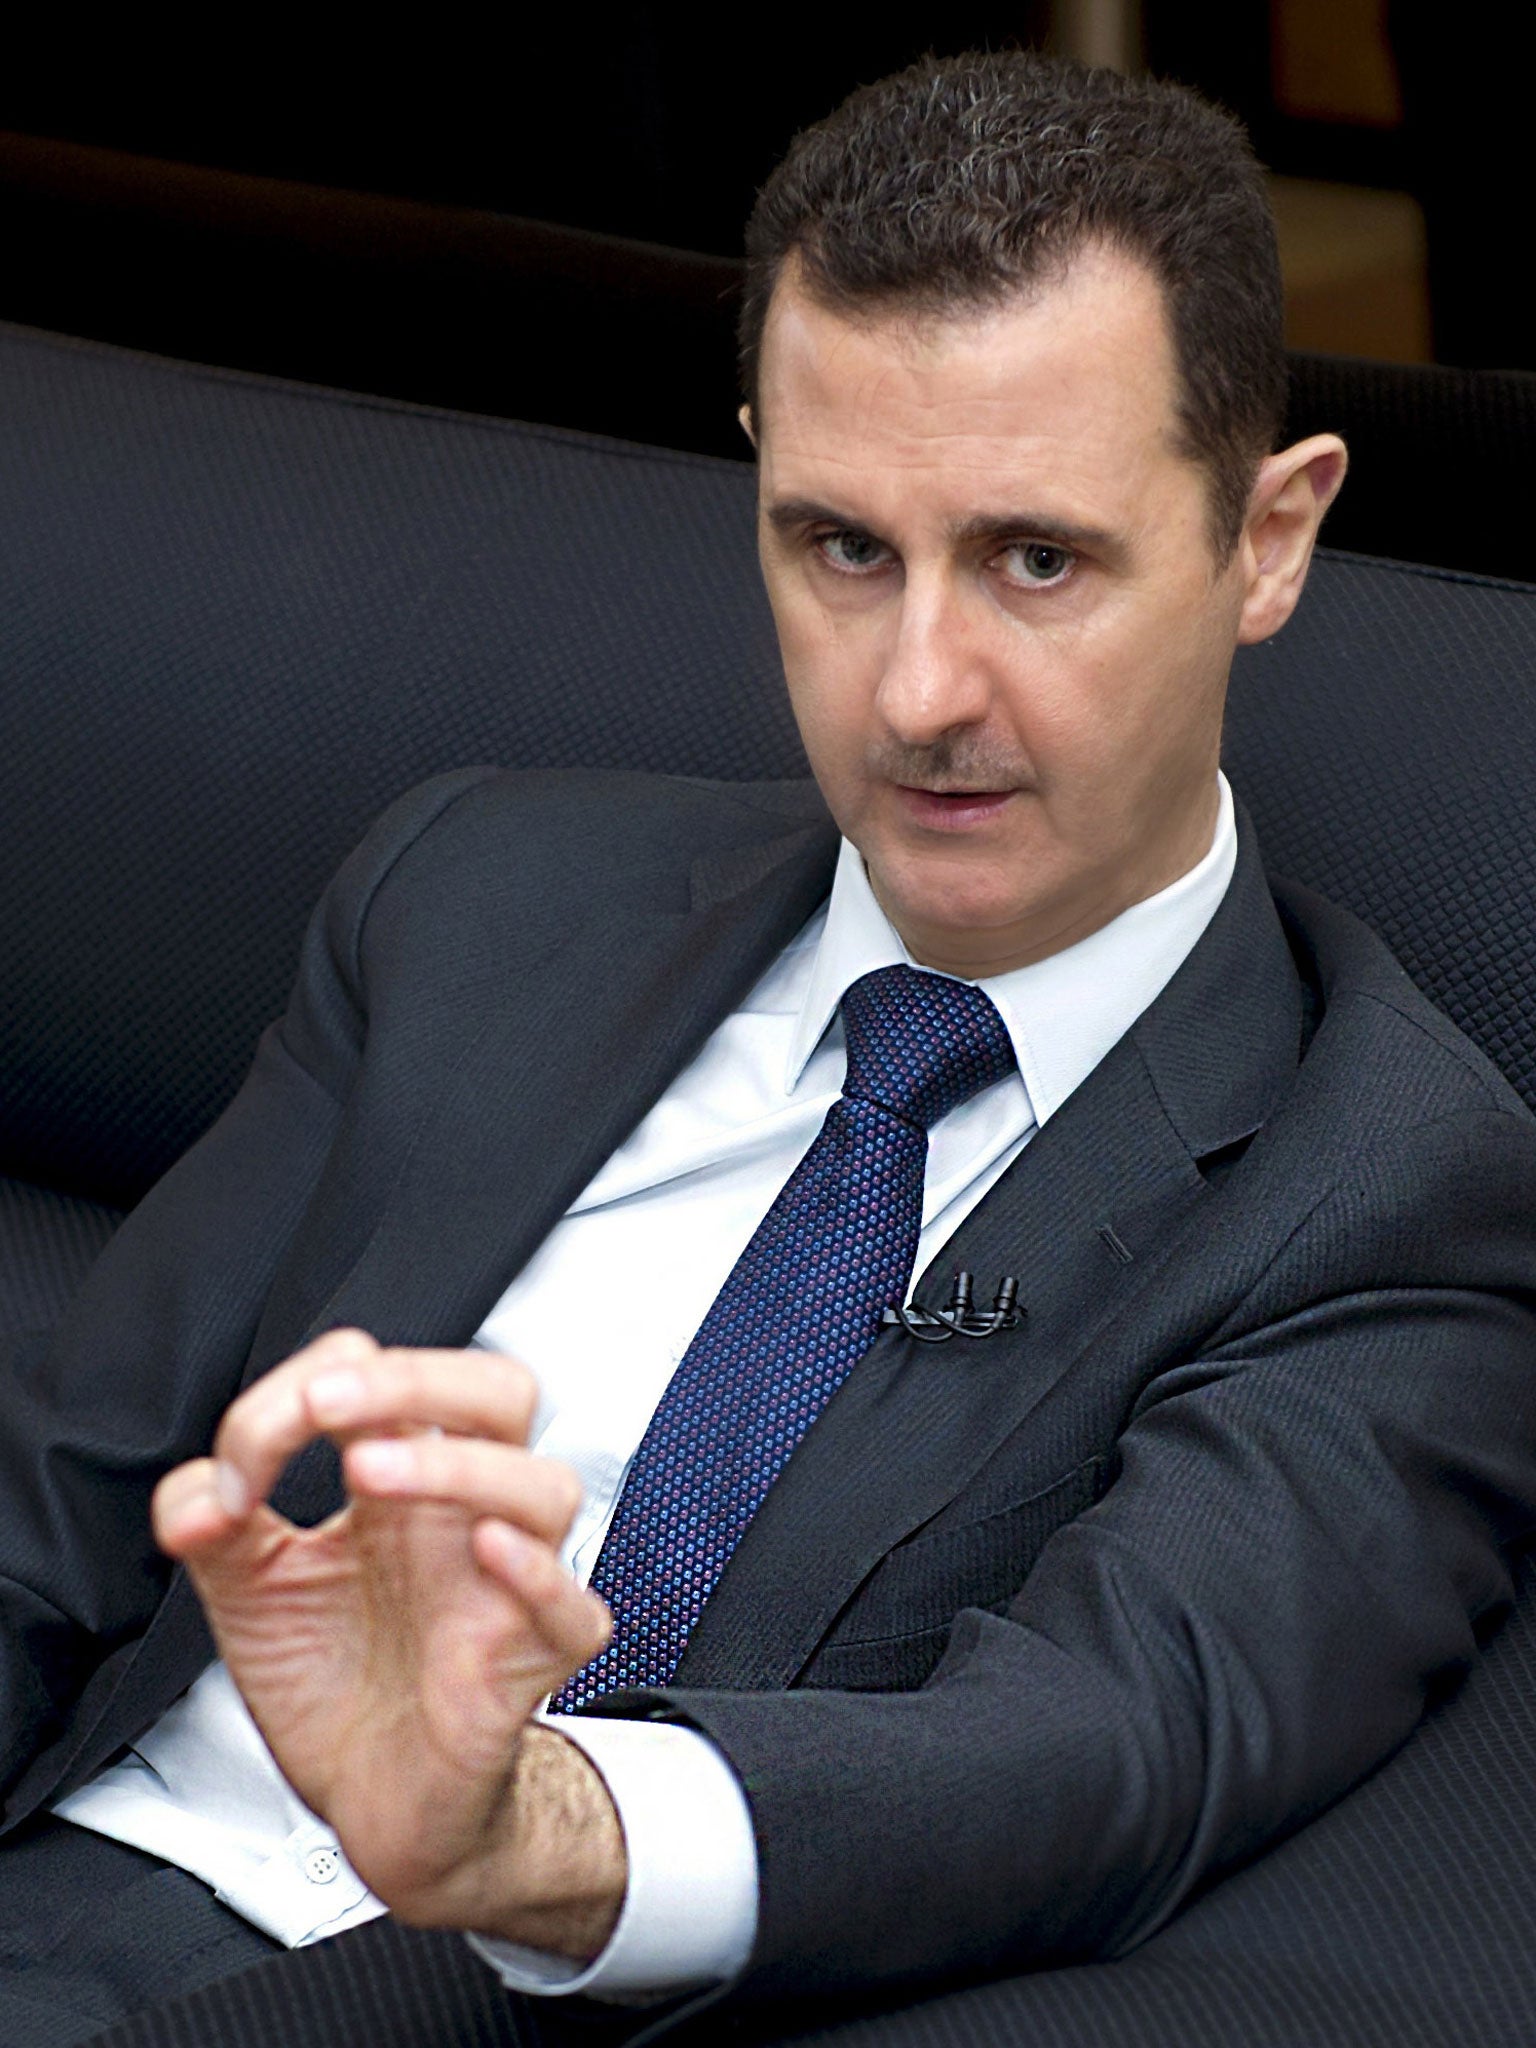 Bashar al-assad: President’s forces still have the upper hand on rebels